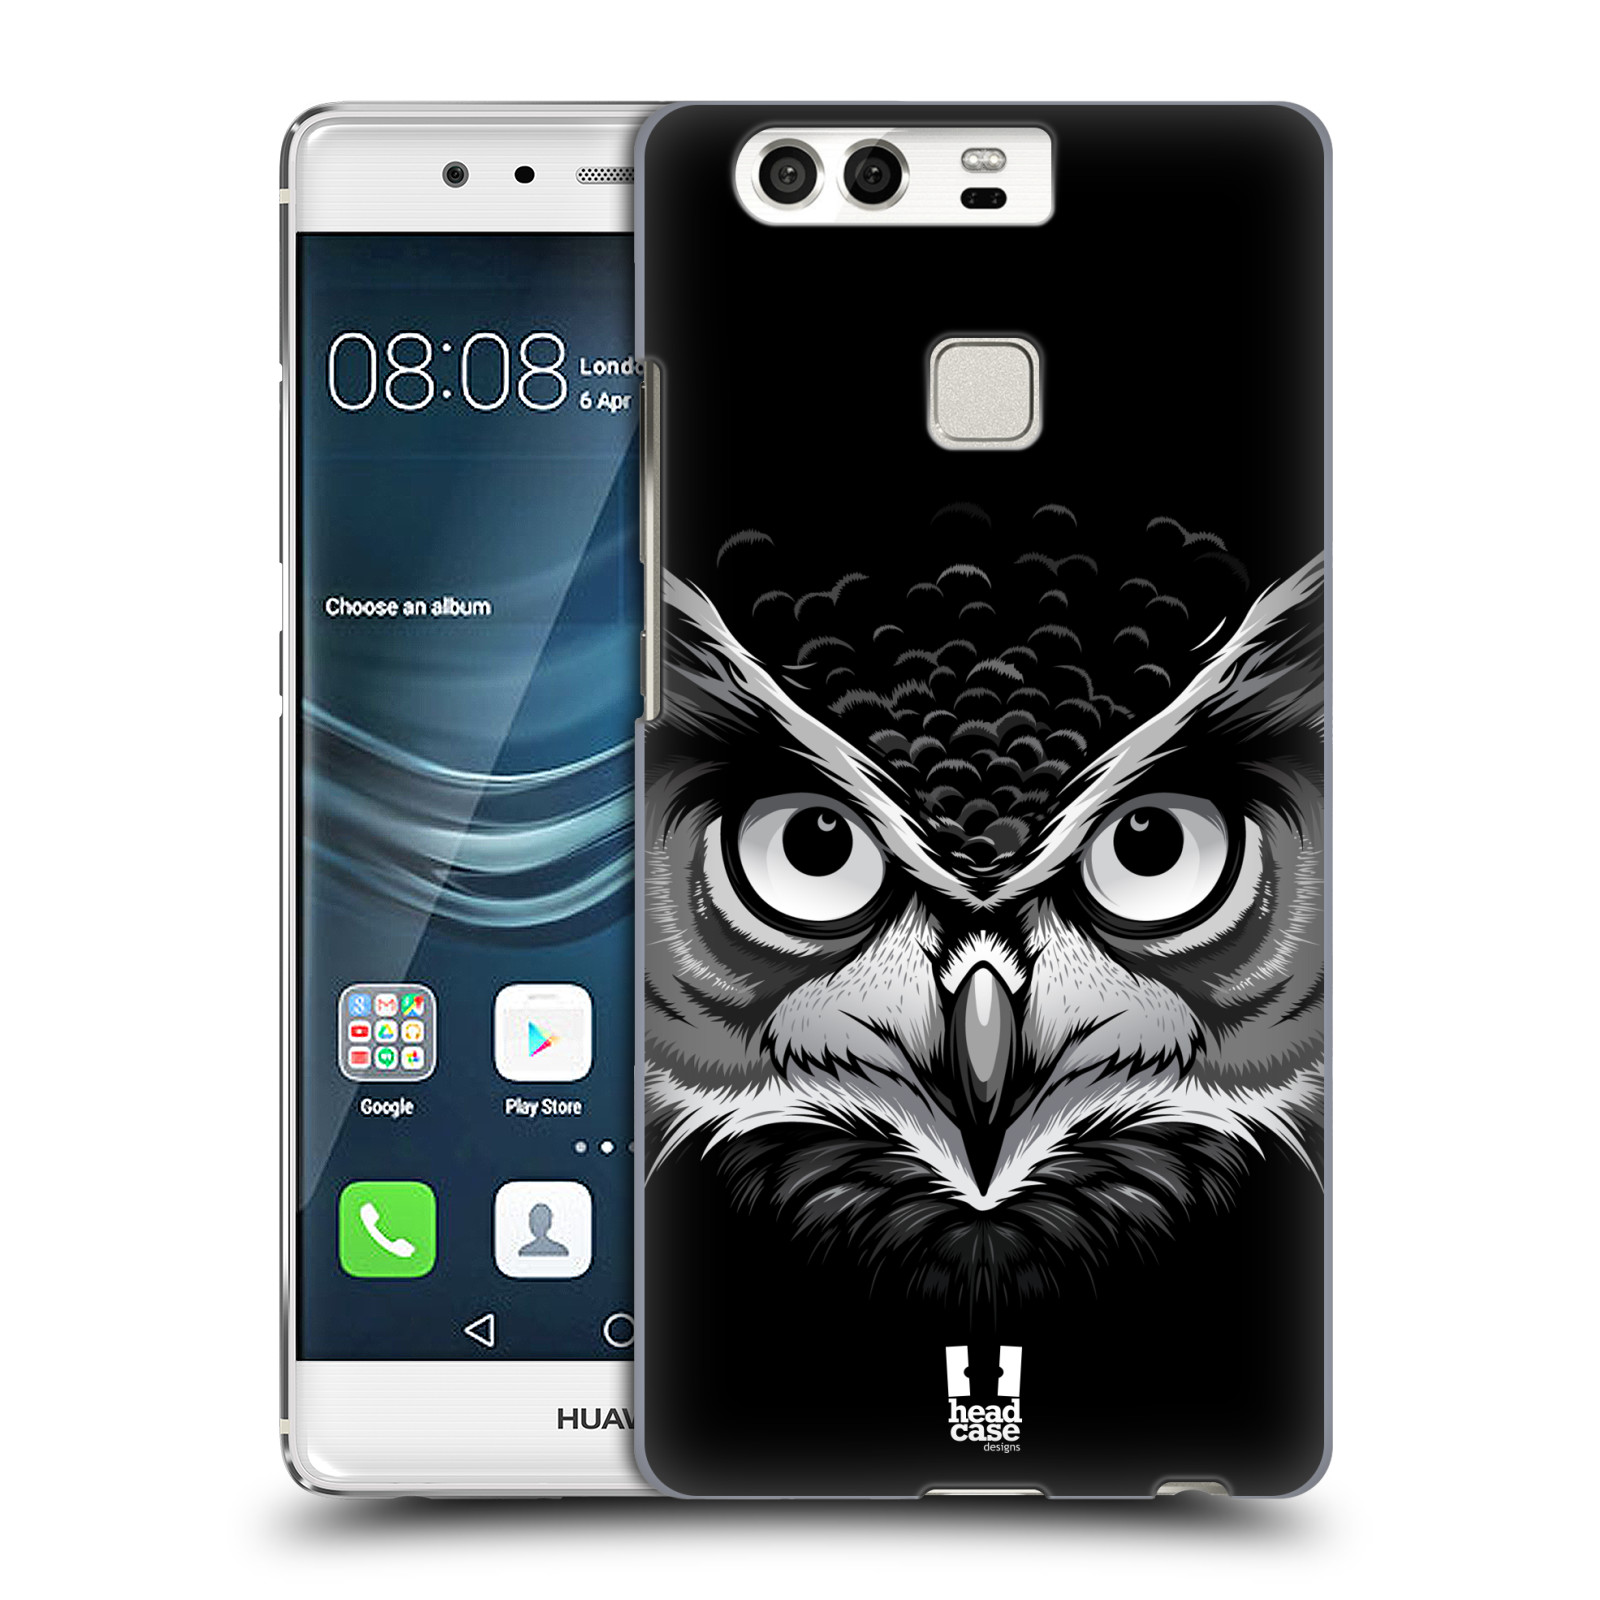 HEAD CASE plastový obal na mobil Huawei P9 / P9 DUAL SIM vzor Zvíře kreslená tvář 2 sova